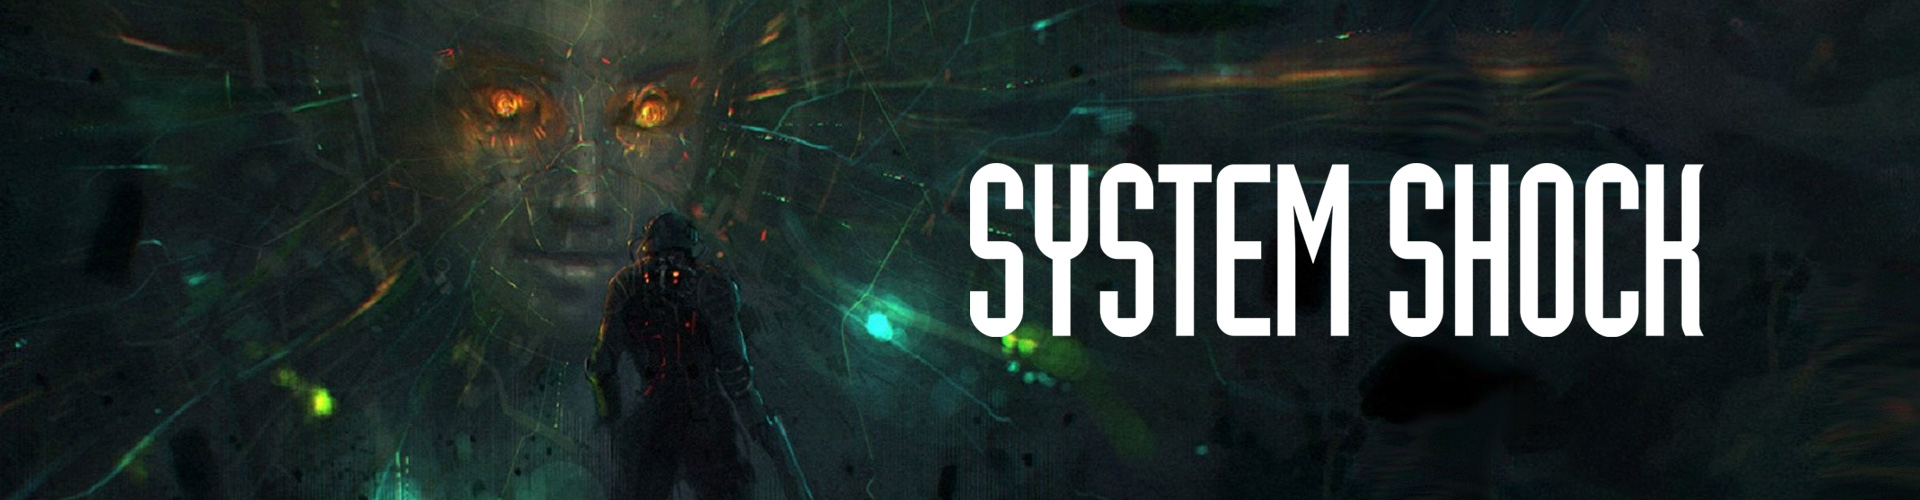 System Shock est un jeu dâhorreur de science fiction